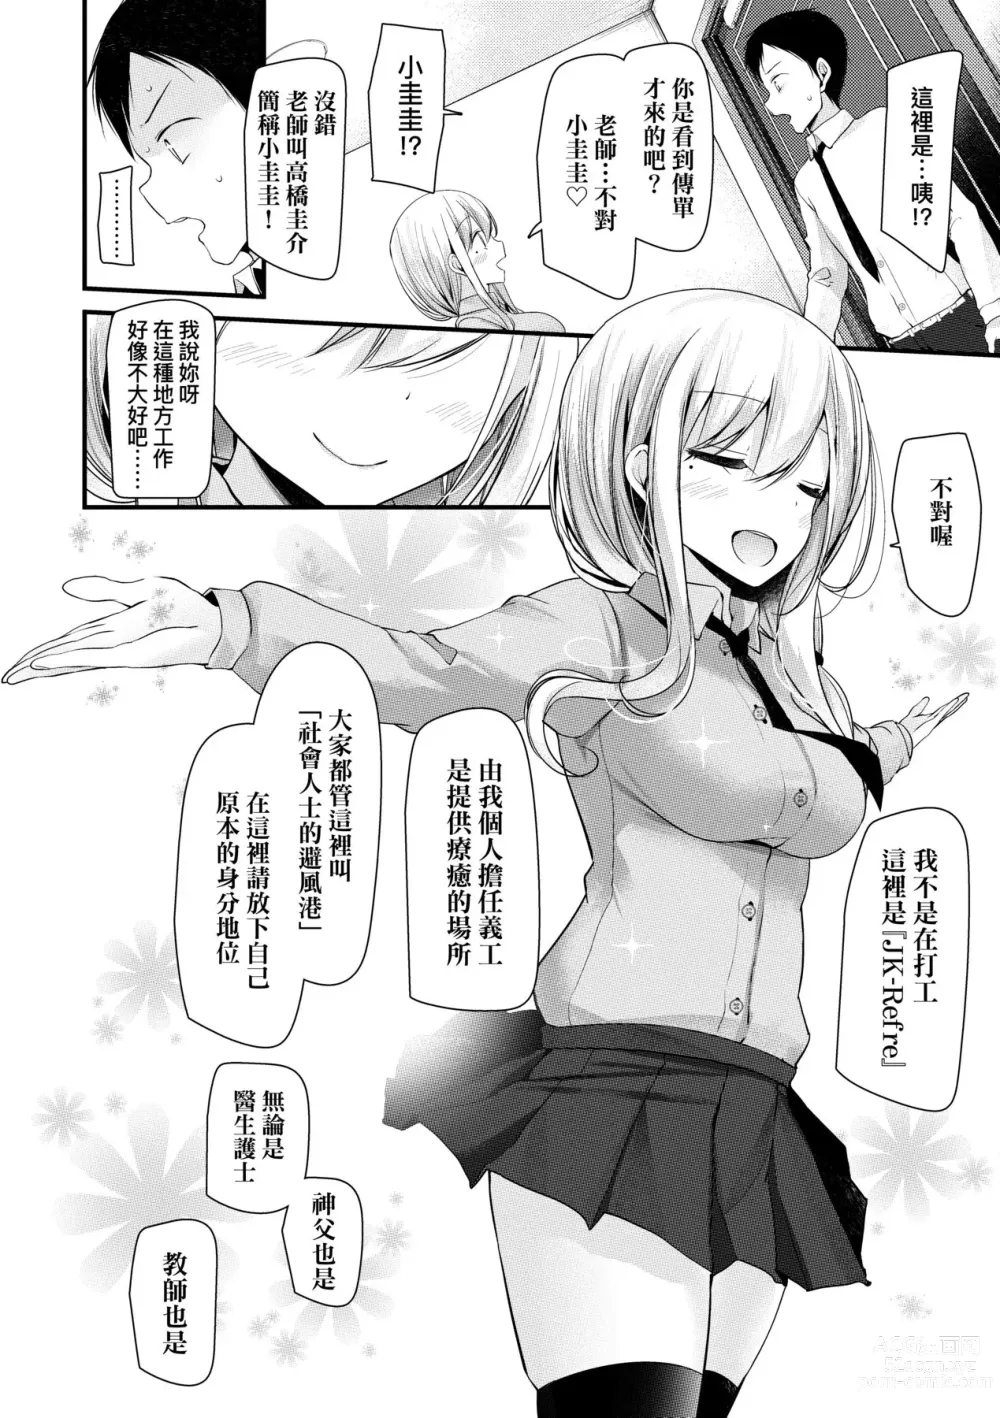 Page 11 of manga JK.REFLE (decensored)